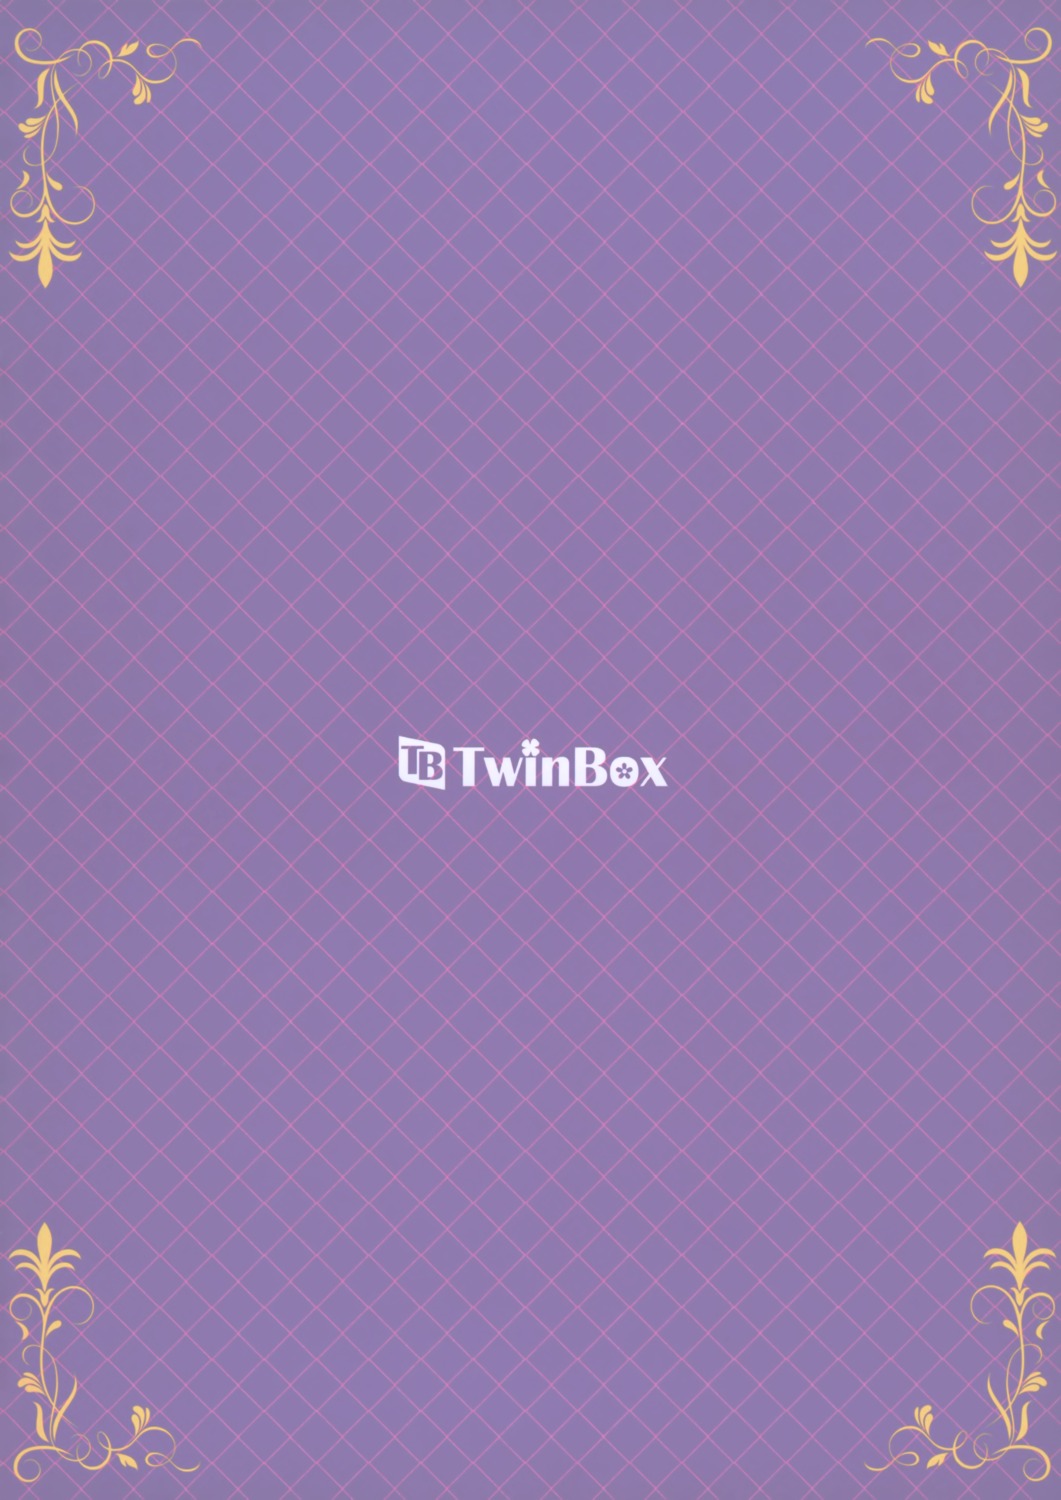 tagme twinbox_(circle)